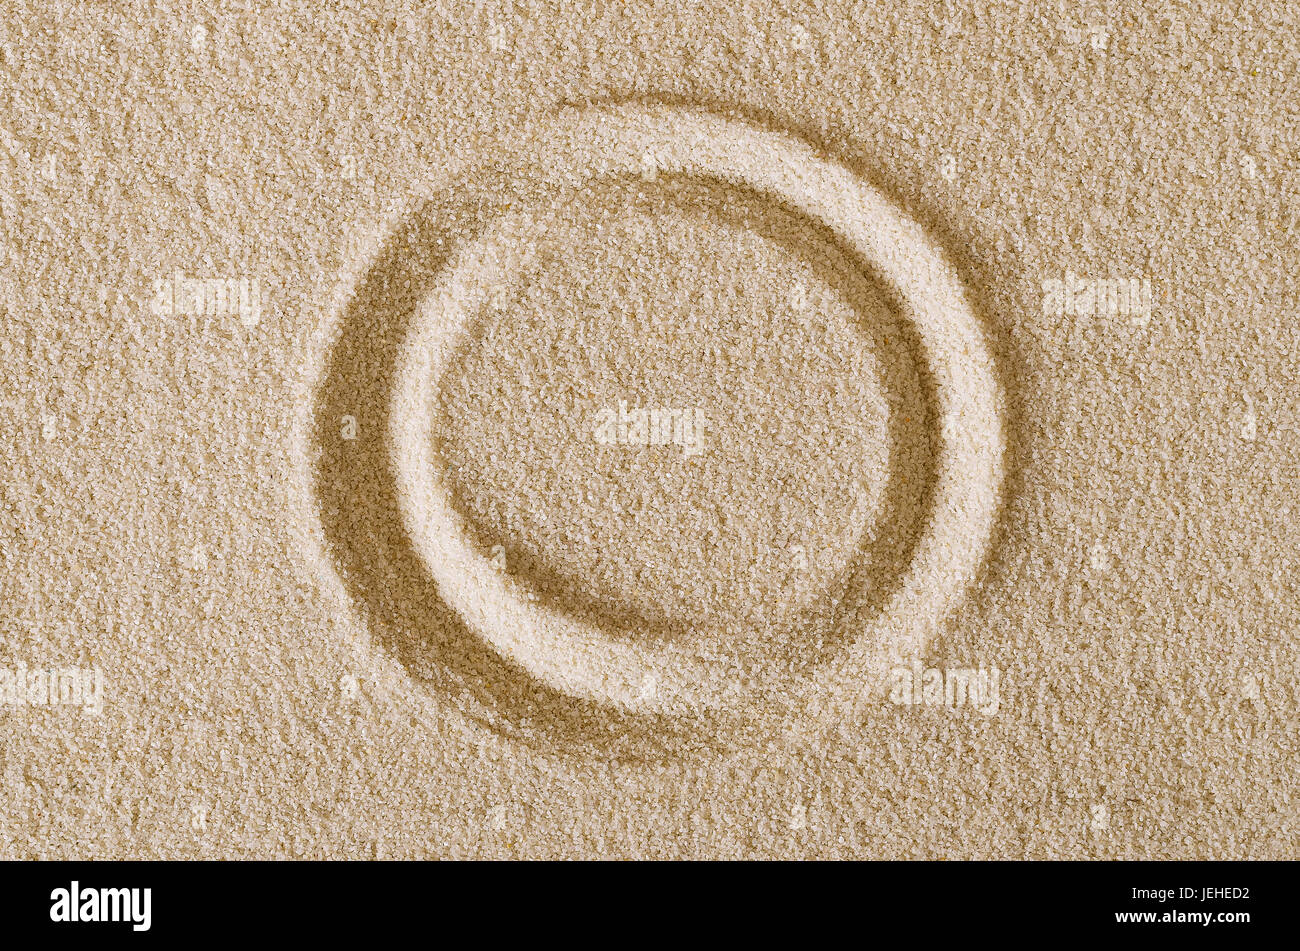 Forme du cercle mentions légales en surface du sable. Une courbe fermée, un anneau ou un disque dans une zone de sable plat rectangulaire. Les pictogrammes et signe. Macro photo de près. Banque D'Images